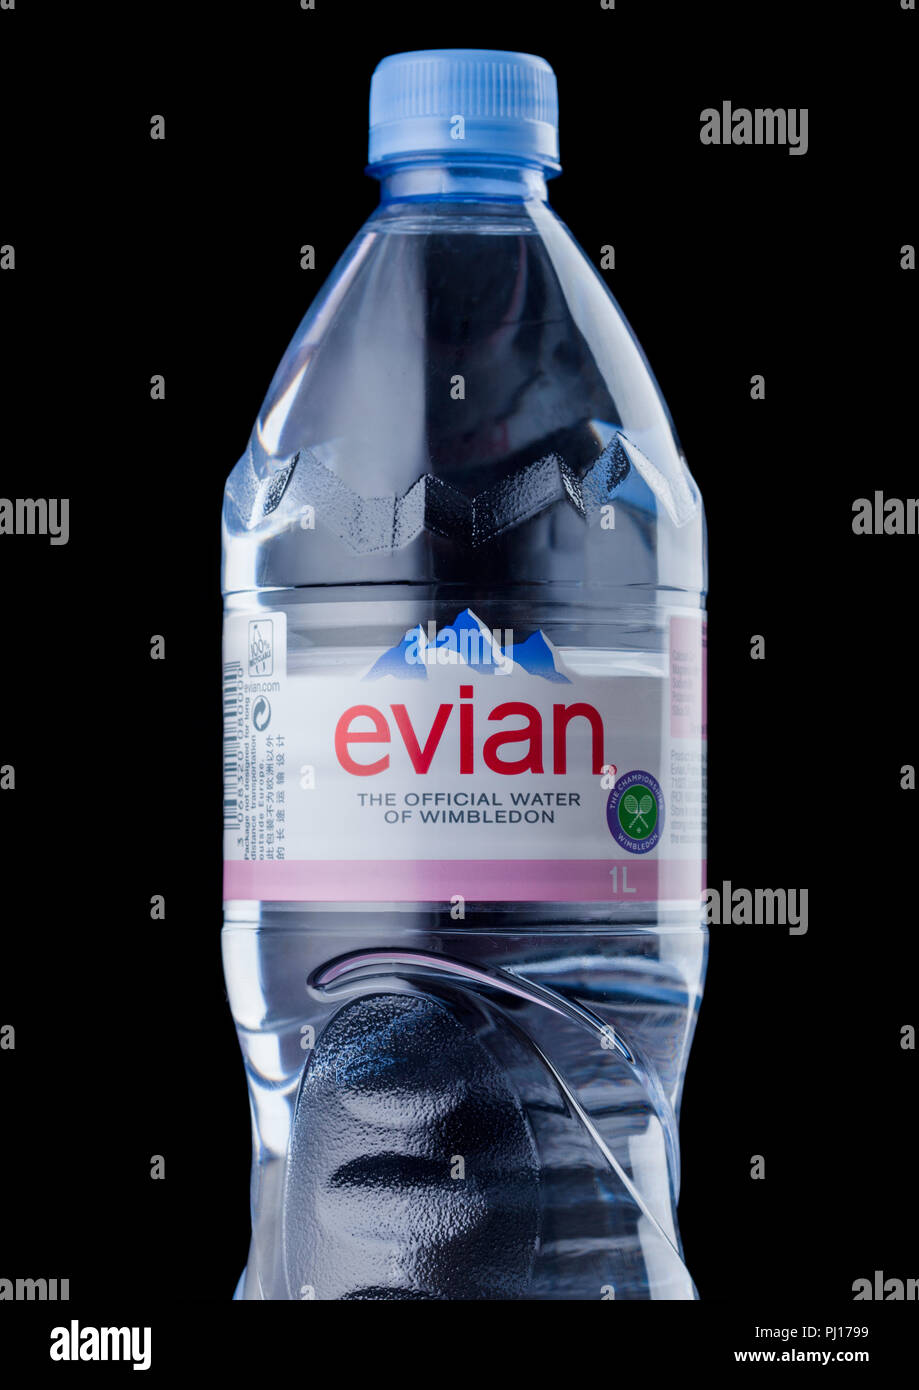 6 bottiglie ACQUA NATURALE EVIAN 1 litro